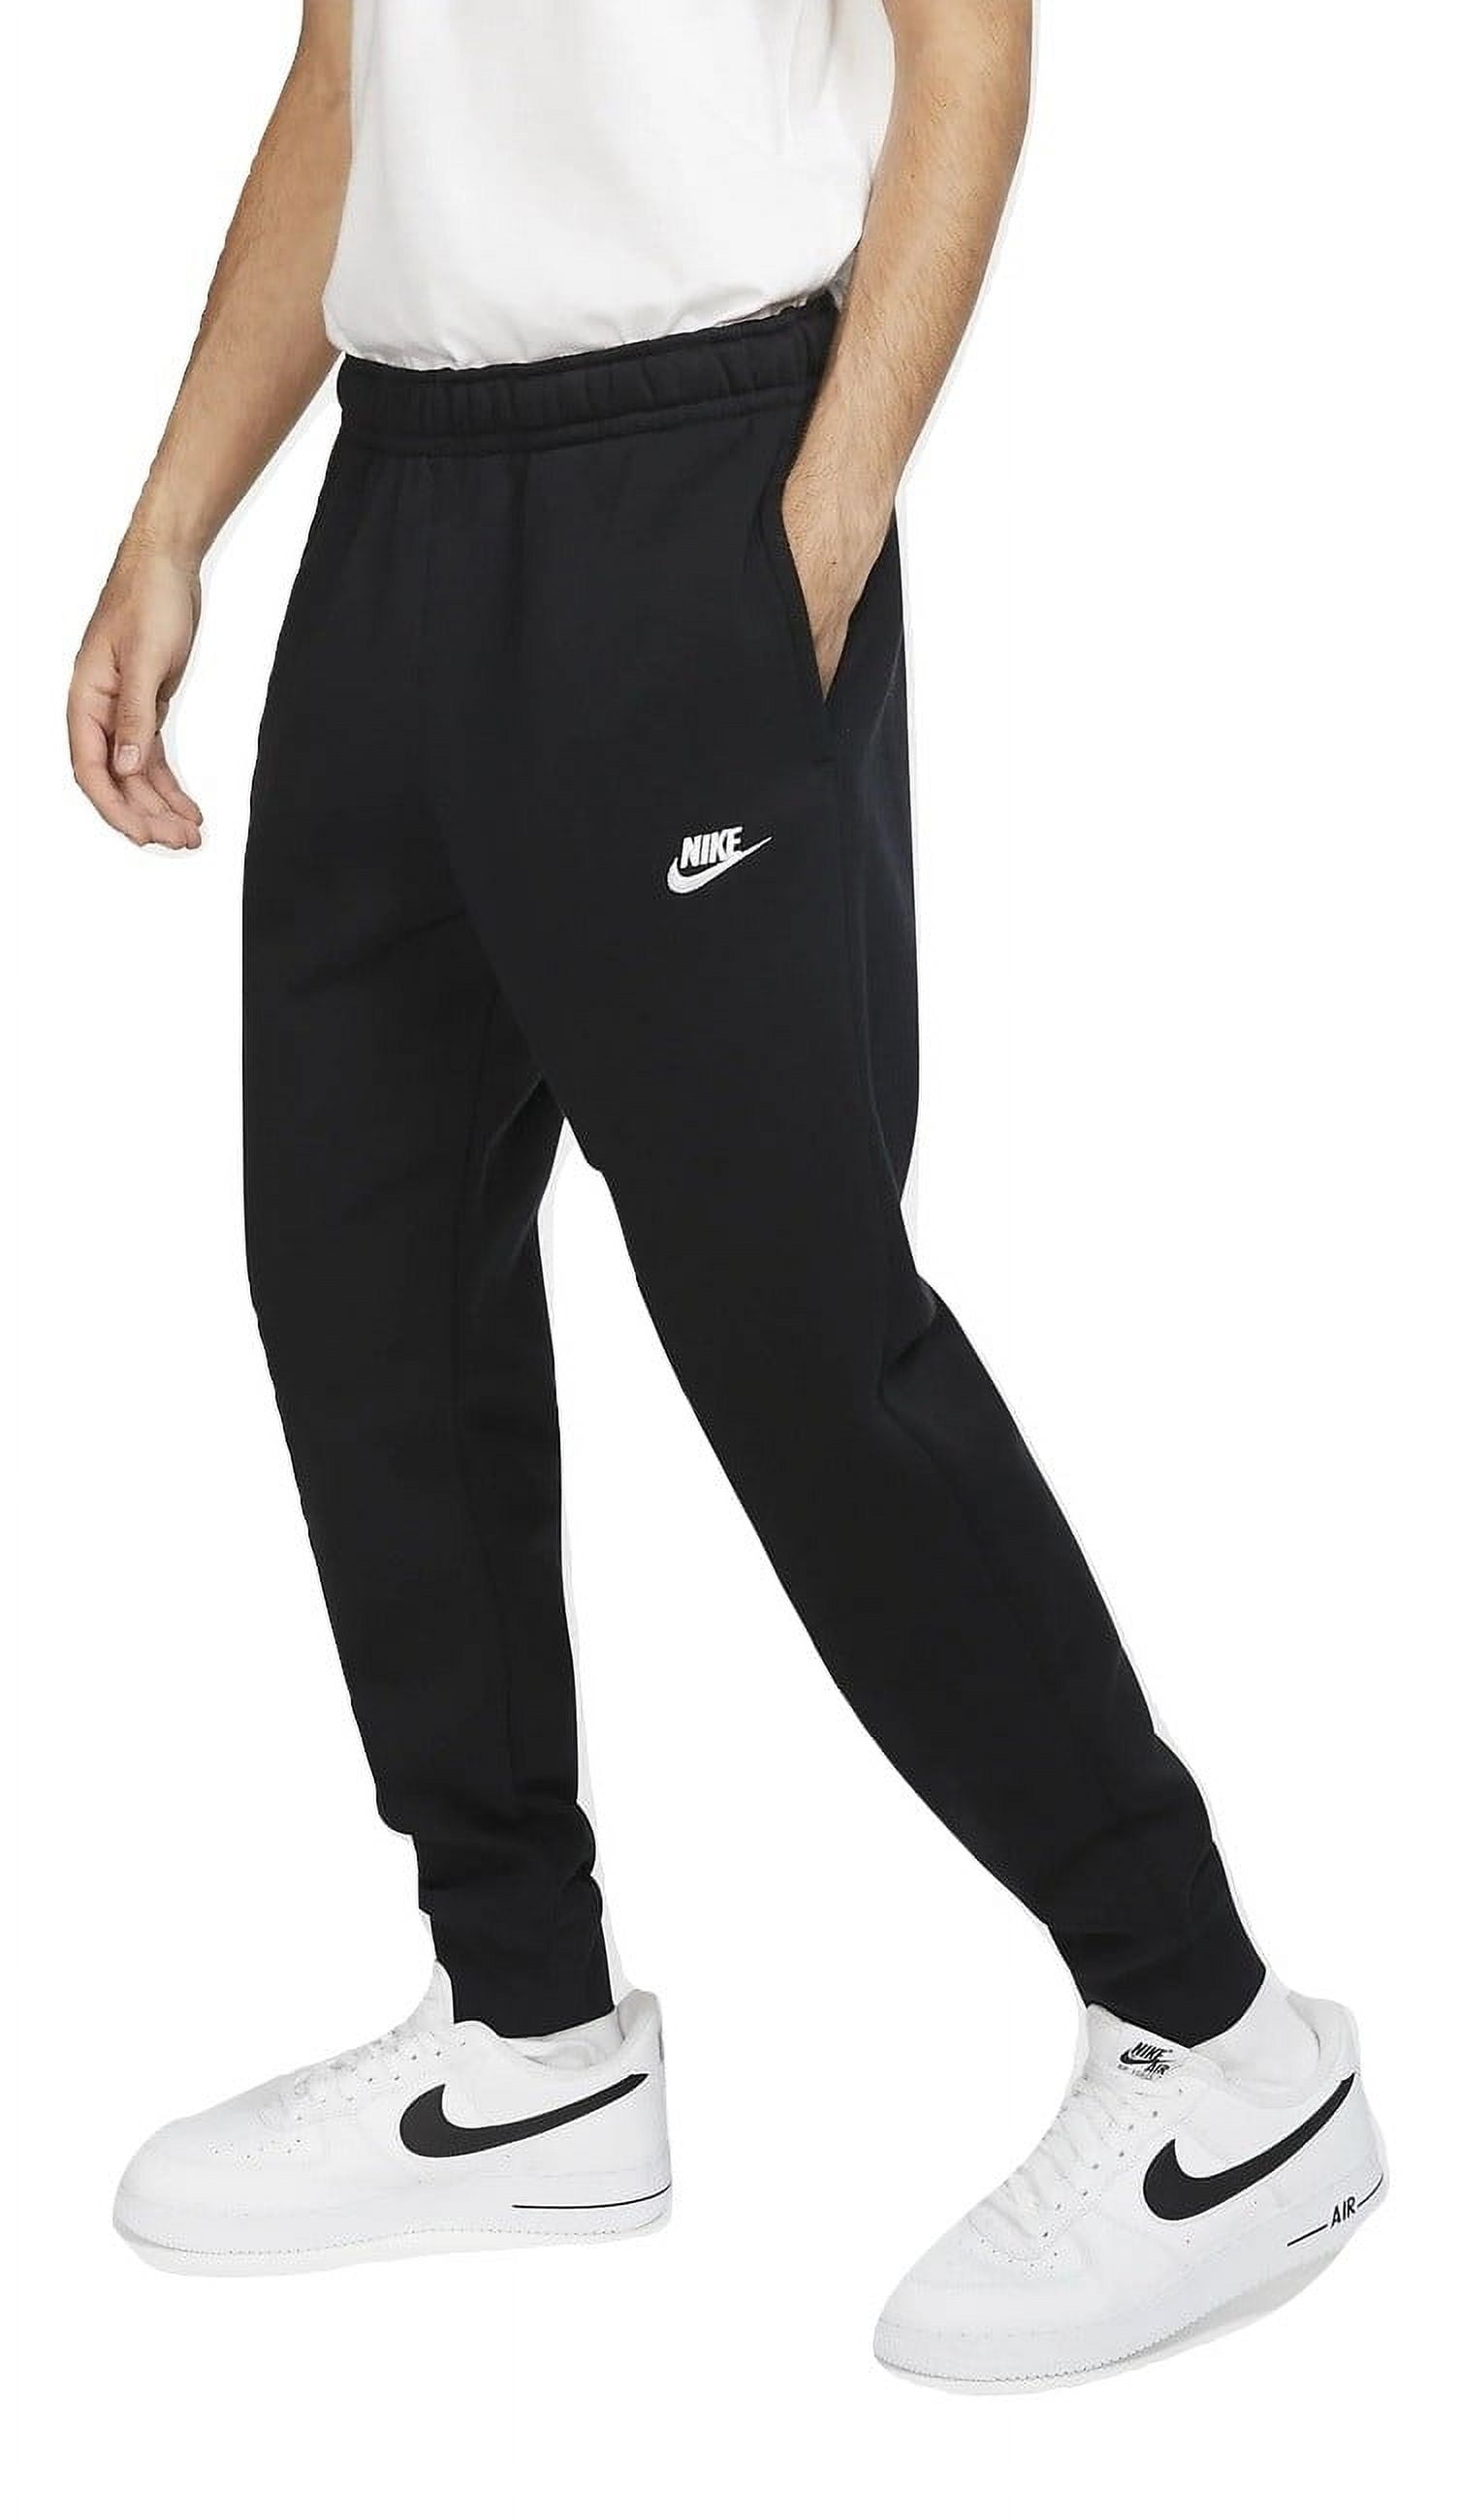 Nike Club Fleece Tapered Cuff Sweatpants Pants Black L 826431-010 - Walmart.com